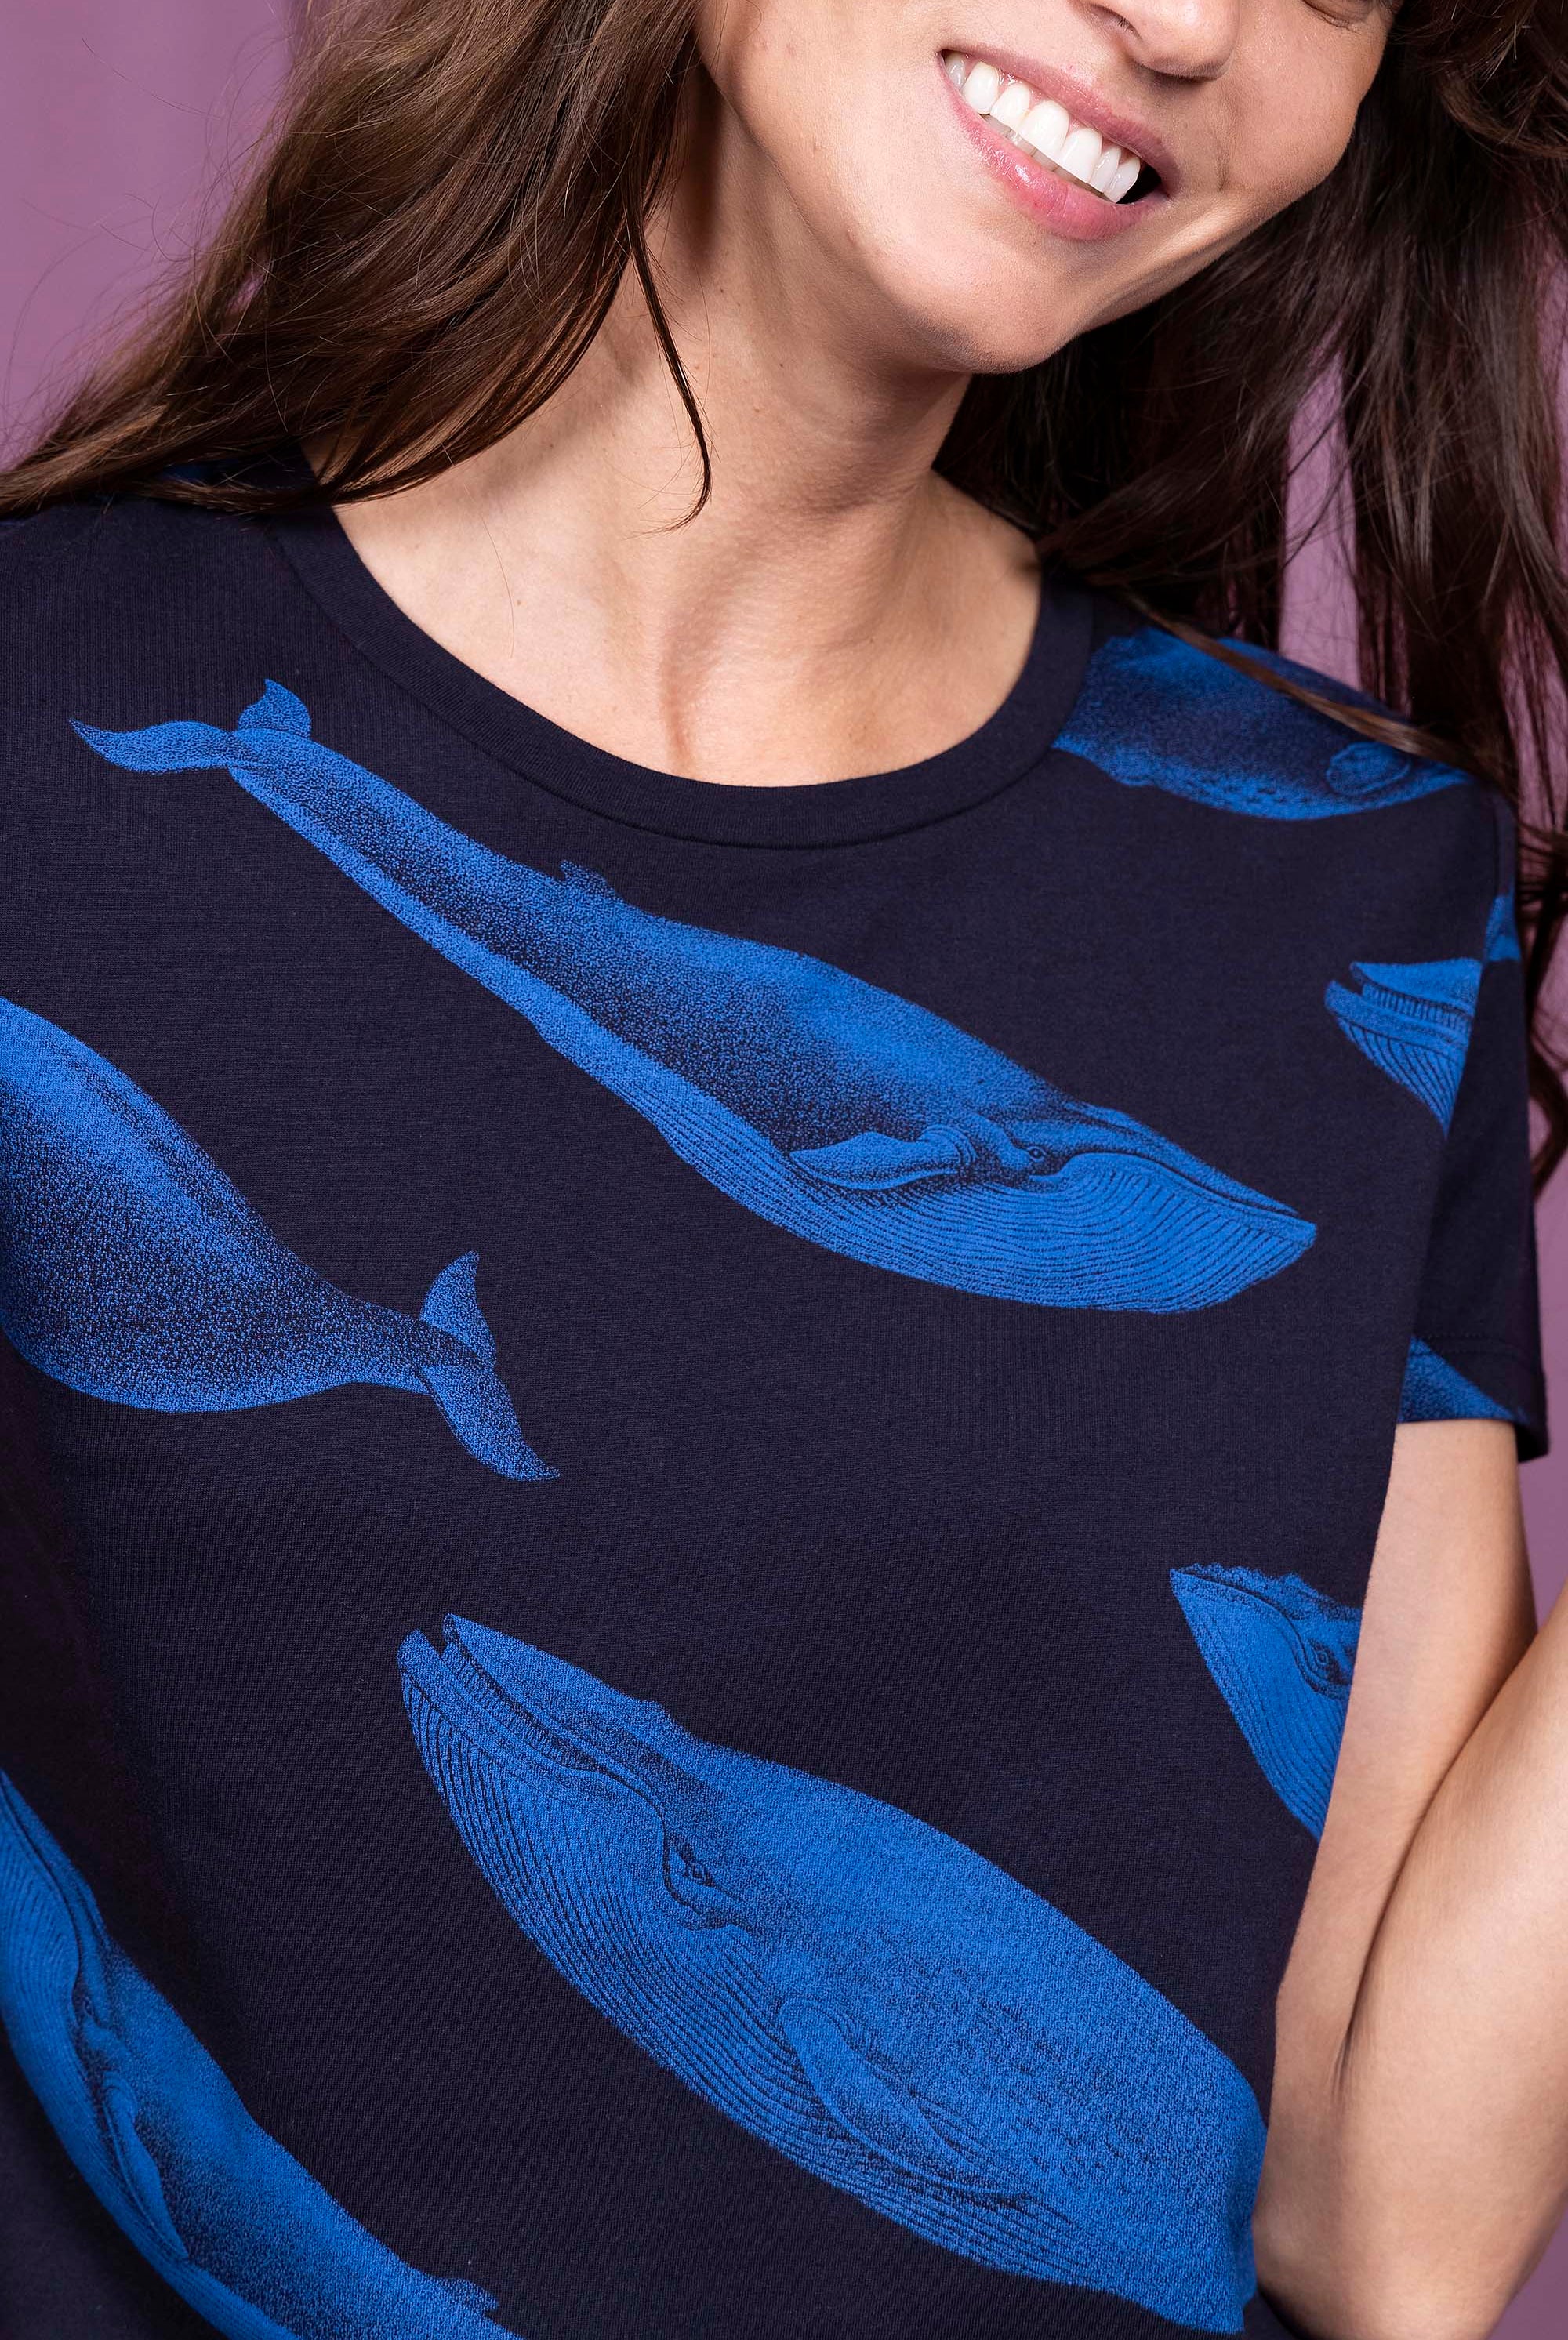 T-shirt Medallon Ballena Bleu Marine mode graphique, ligne féminine et légèrement rétro, motifs arty